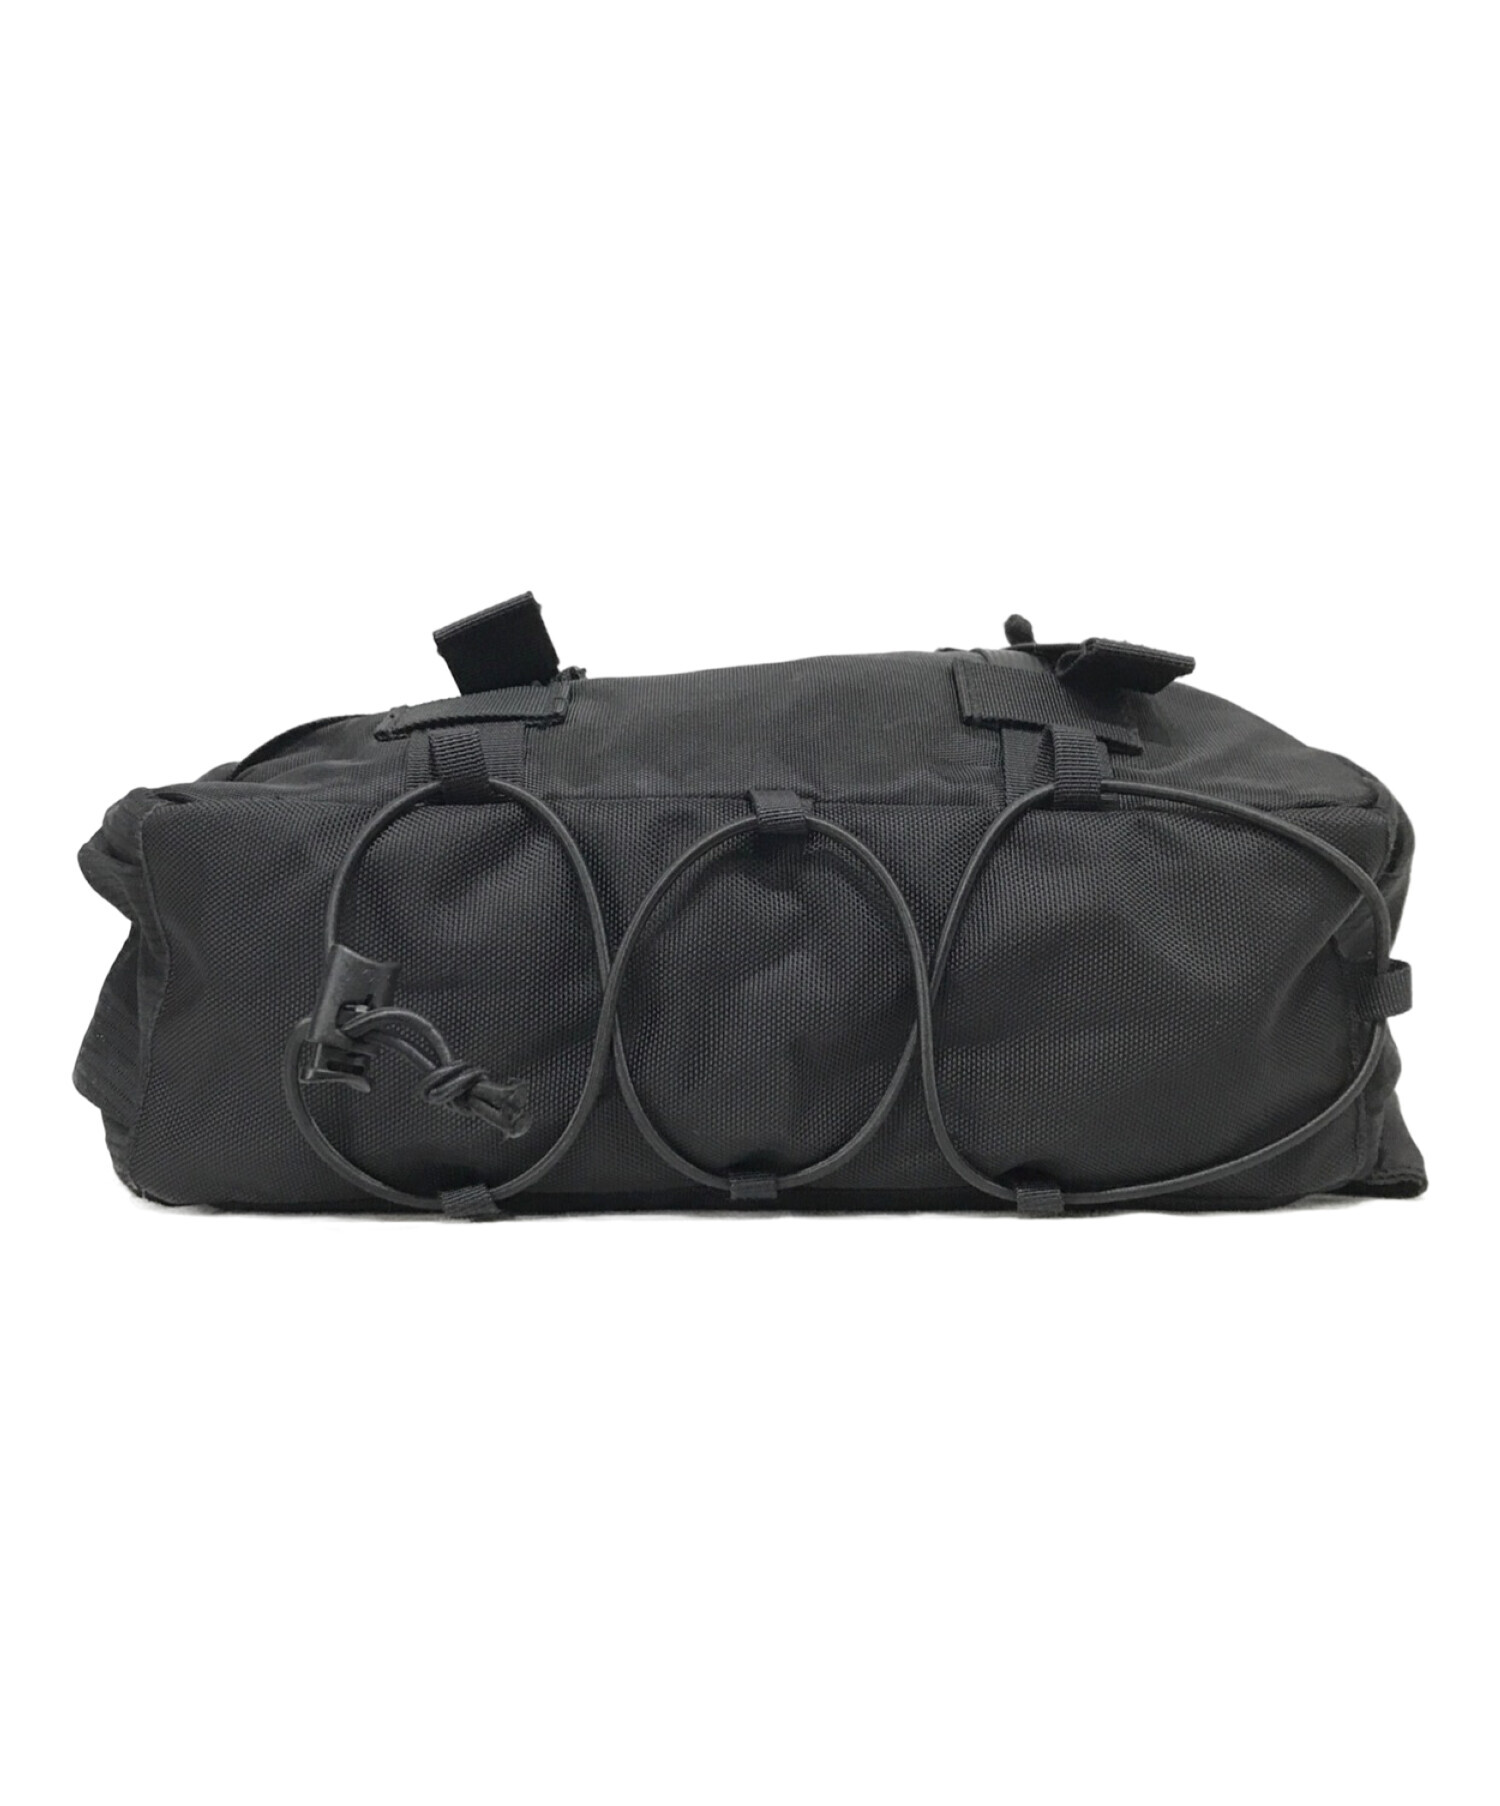 メンズ新品 国内正規品 19aw Supreme Waist Bag BLACK 黒 - ウエストポーチ